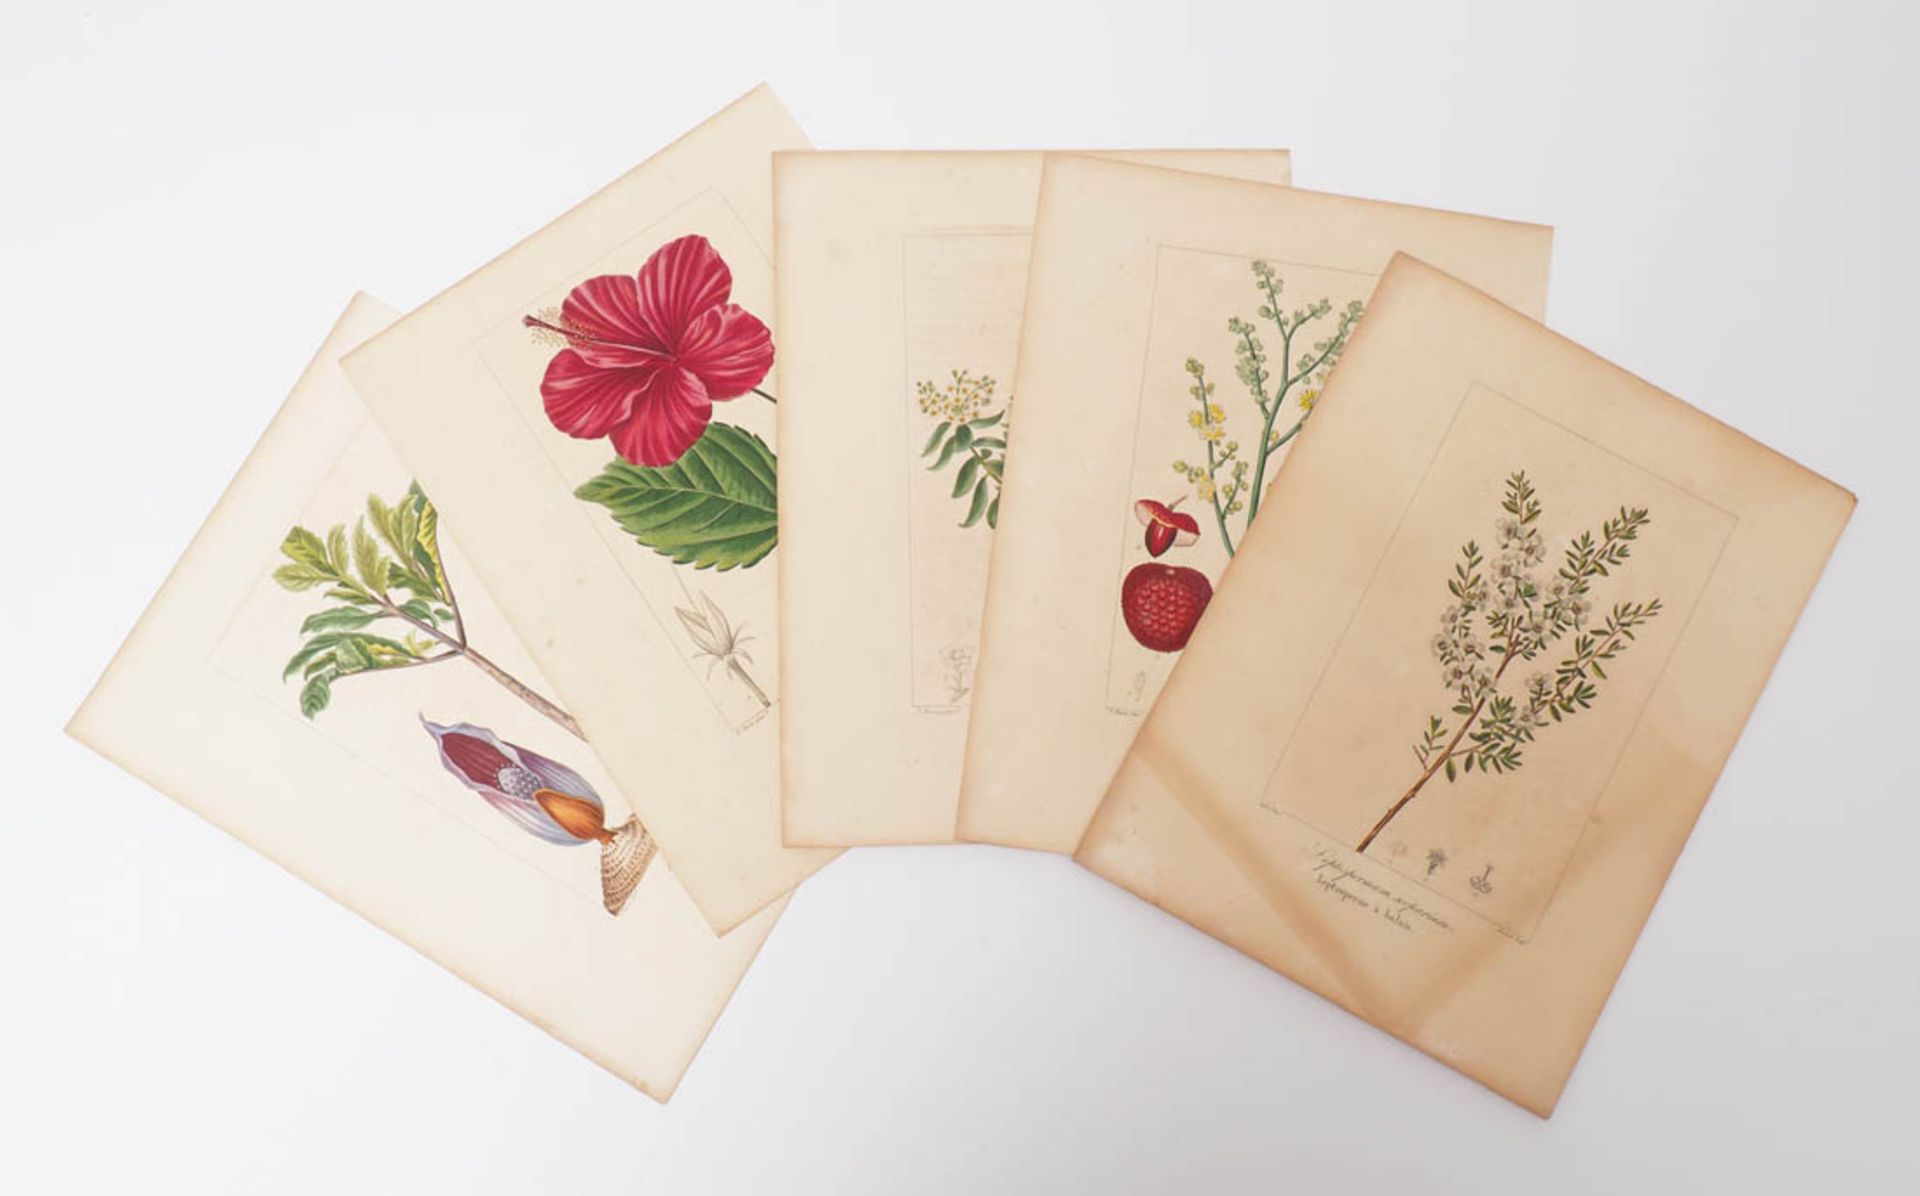 Bessa, Pancrace, 1772 - 1846 Schüler von Redouté, Fünf kolorierte Pflanzenstiche aus "Nouveau